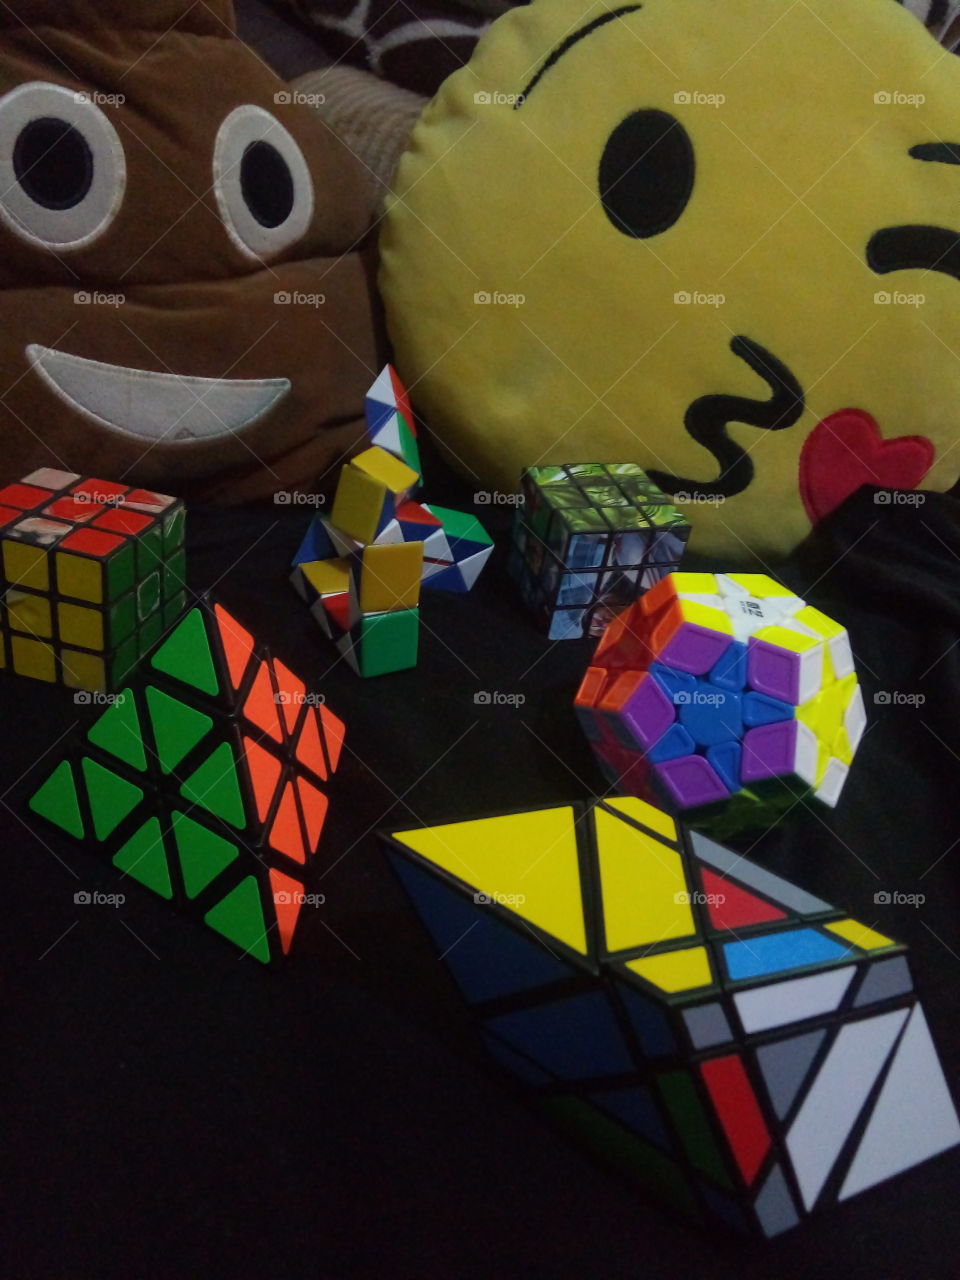 colección de cubos Rubik... formado por varias formas y colores. ideal para divertirse, agilidad mental, habilidades manuales... con unos cojines de emoji al fondo